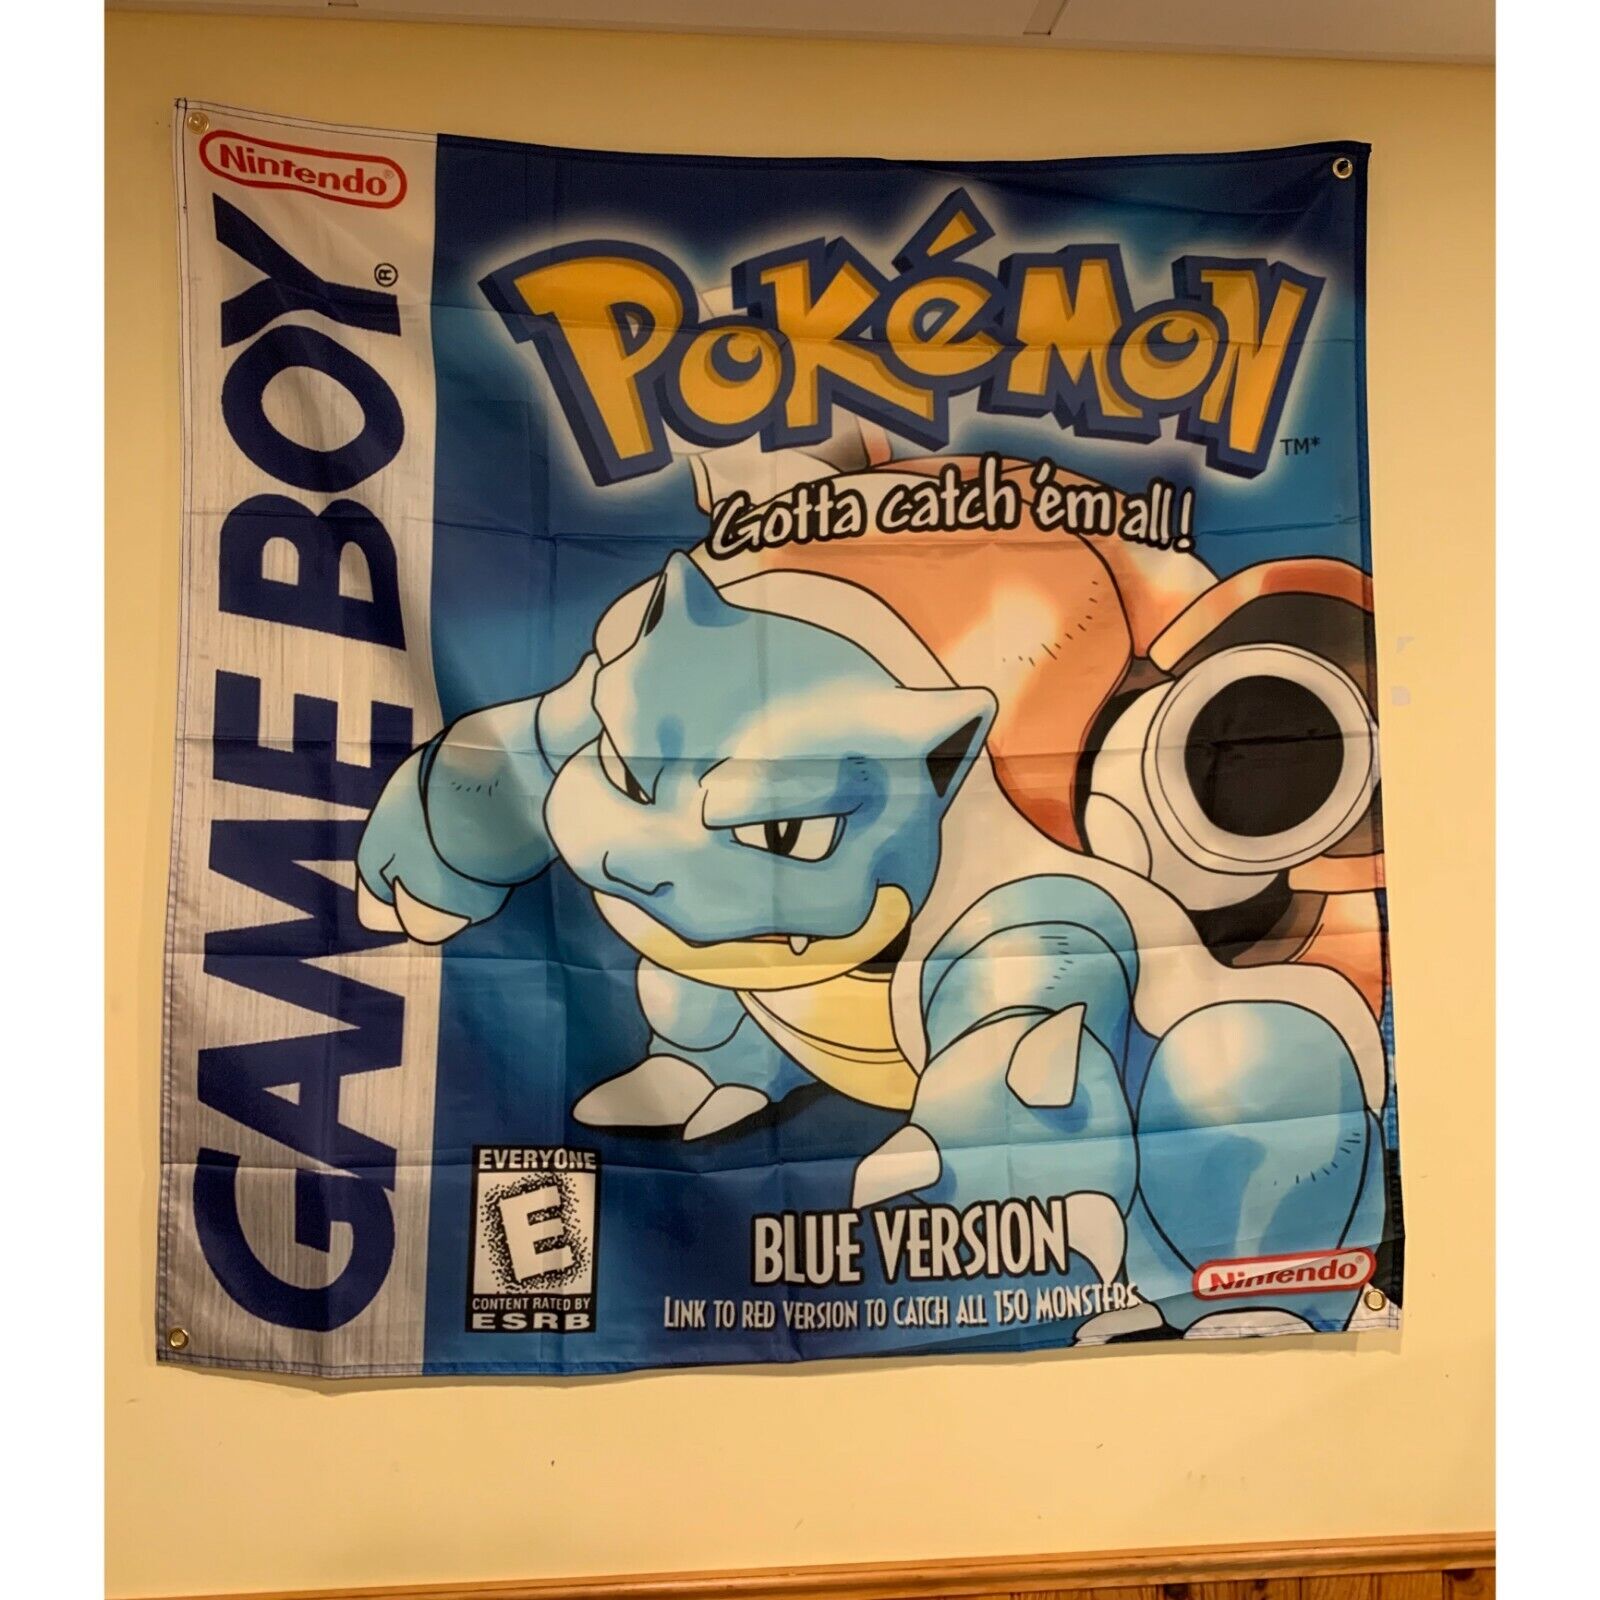 Pokemon Blue Version Blastoise Gameboy Wall Flag Banner Tapestry 3.5 x 3.5 Ft